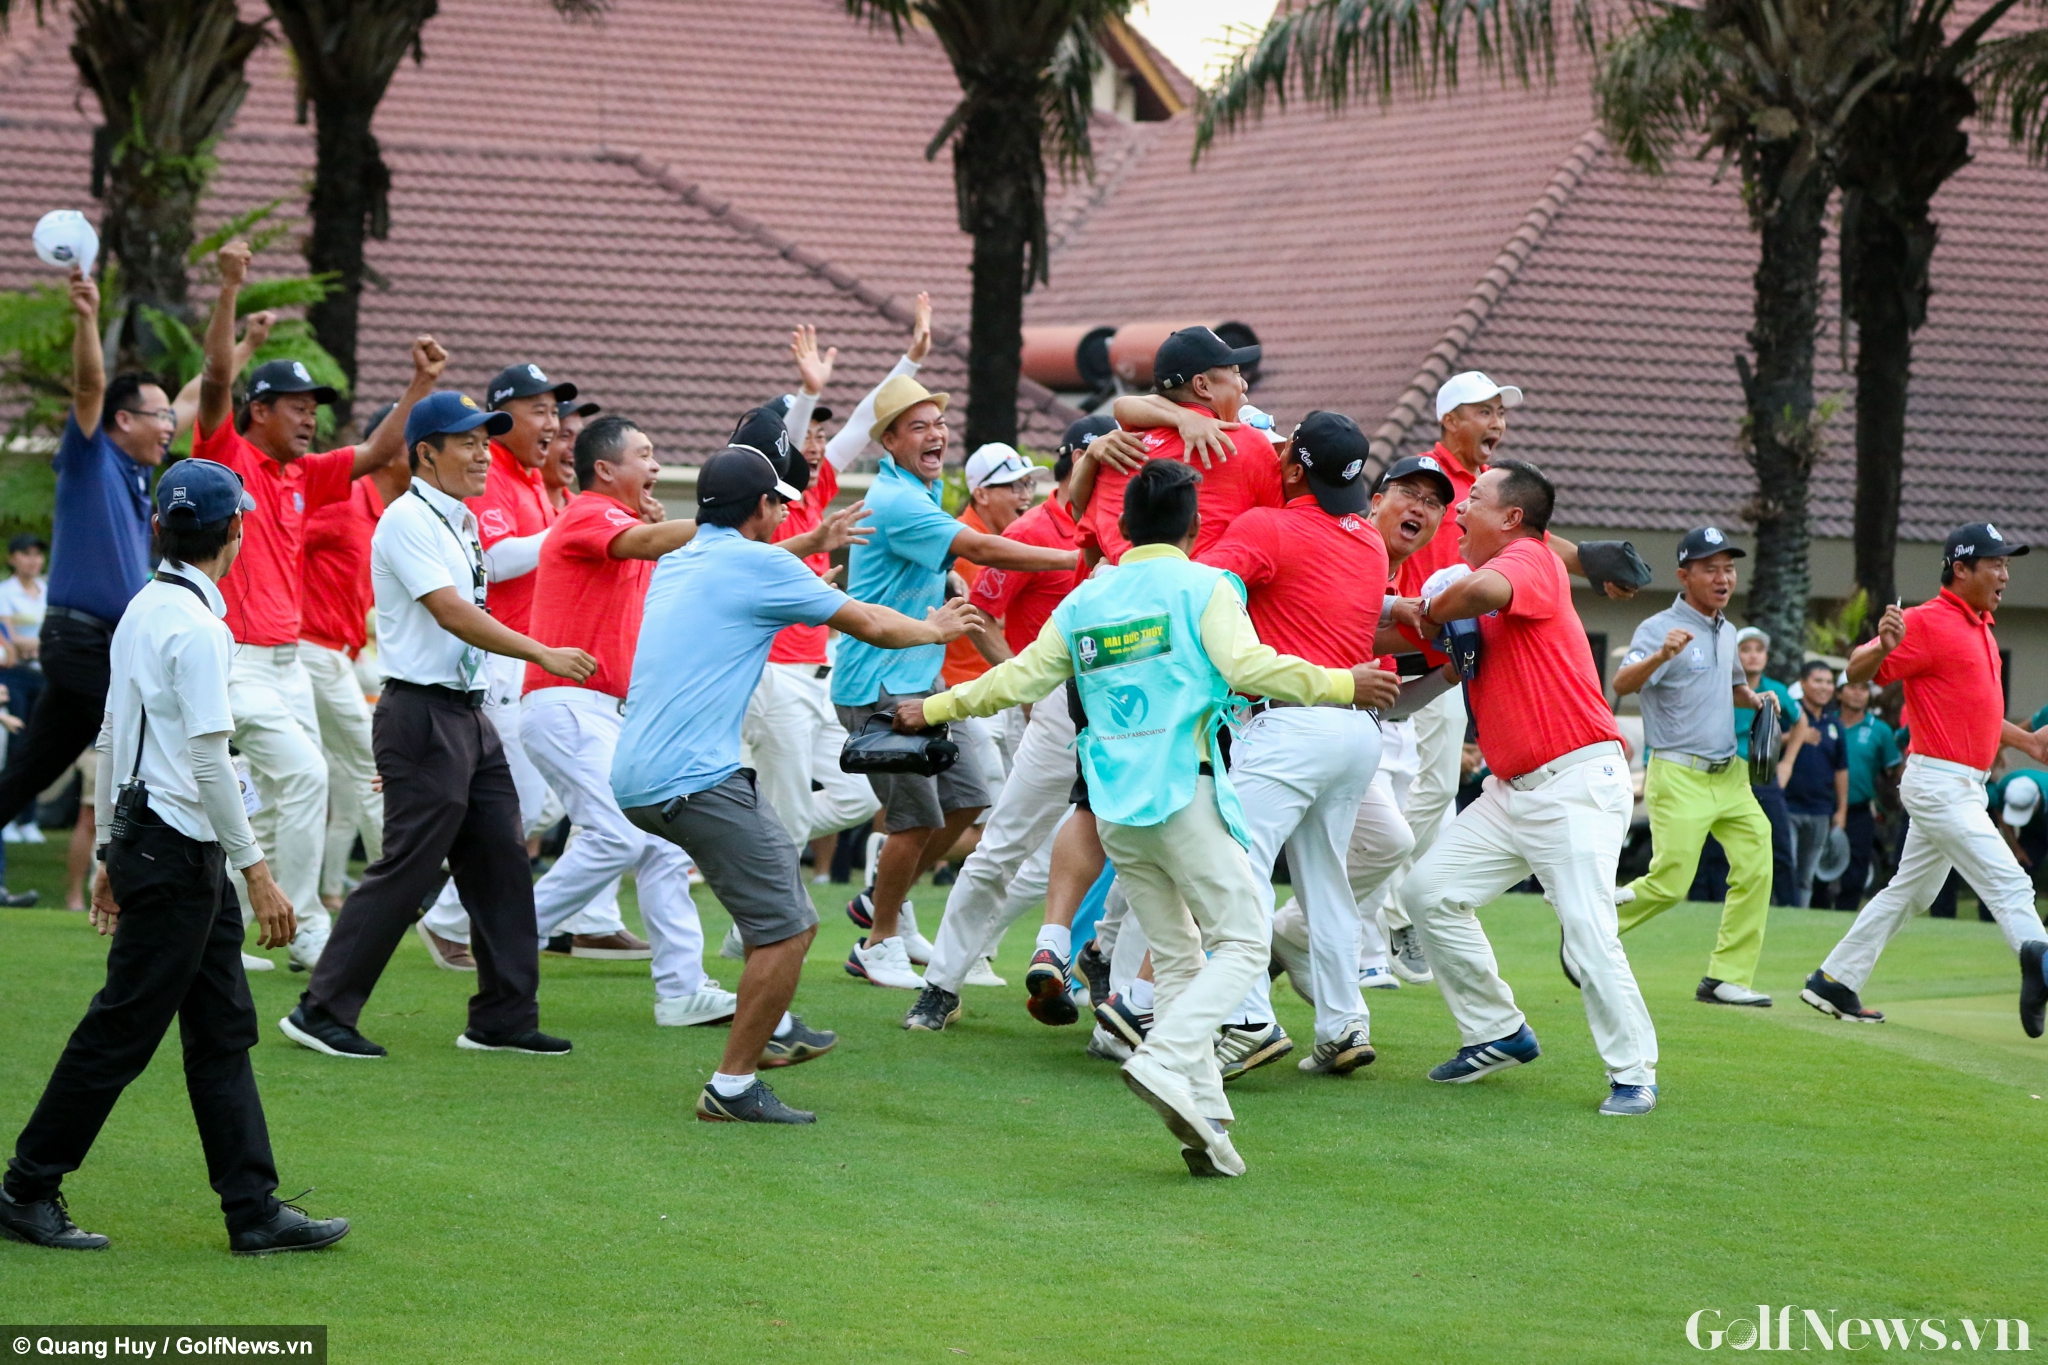 Loạt ảnh đầy cảm xúc của các golfer tại trận chung kết giải VGA Union Cup 2018